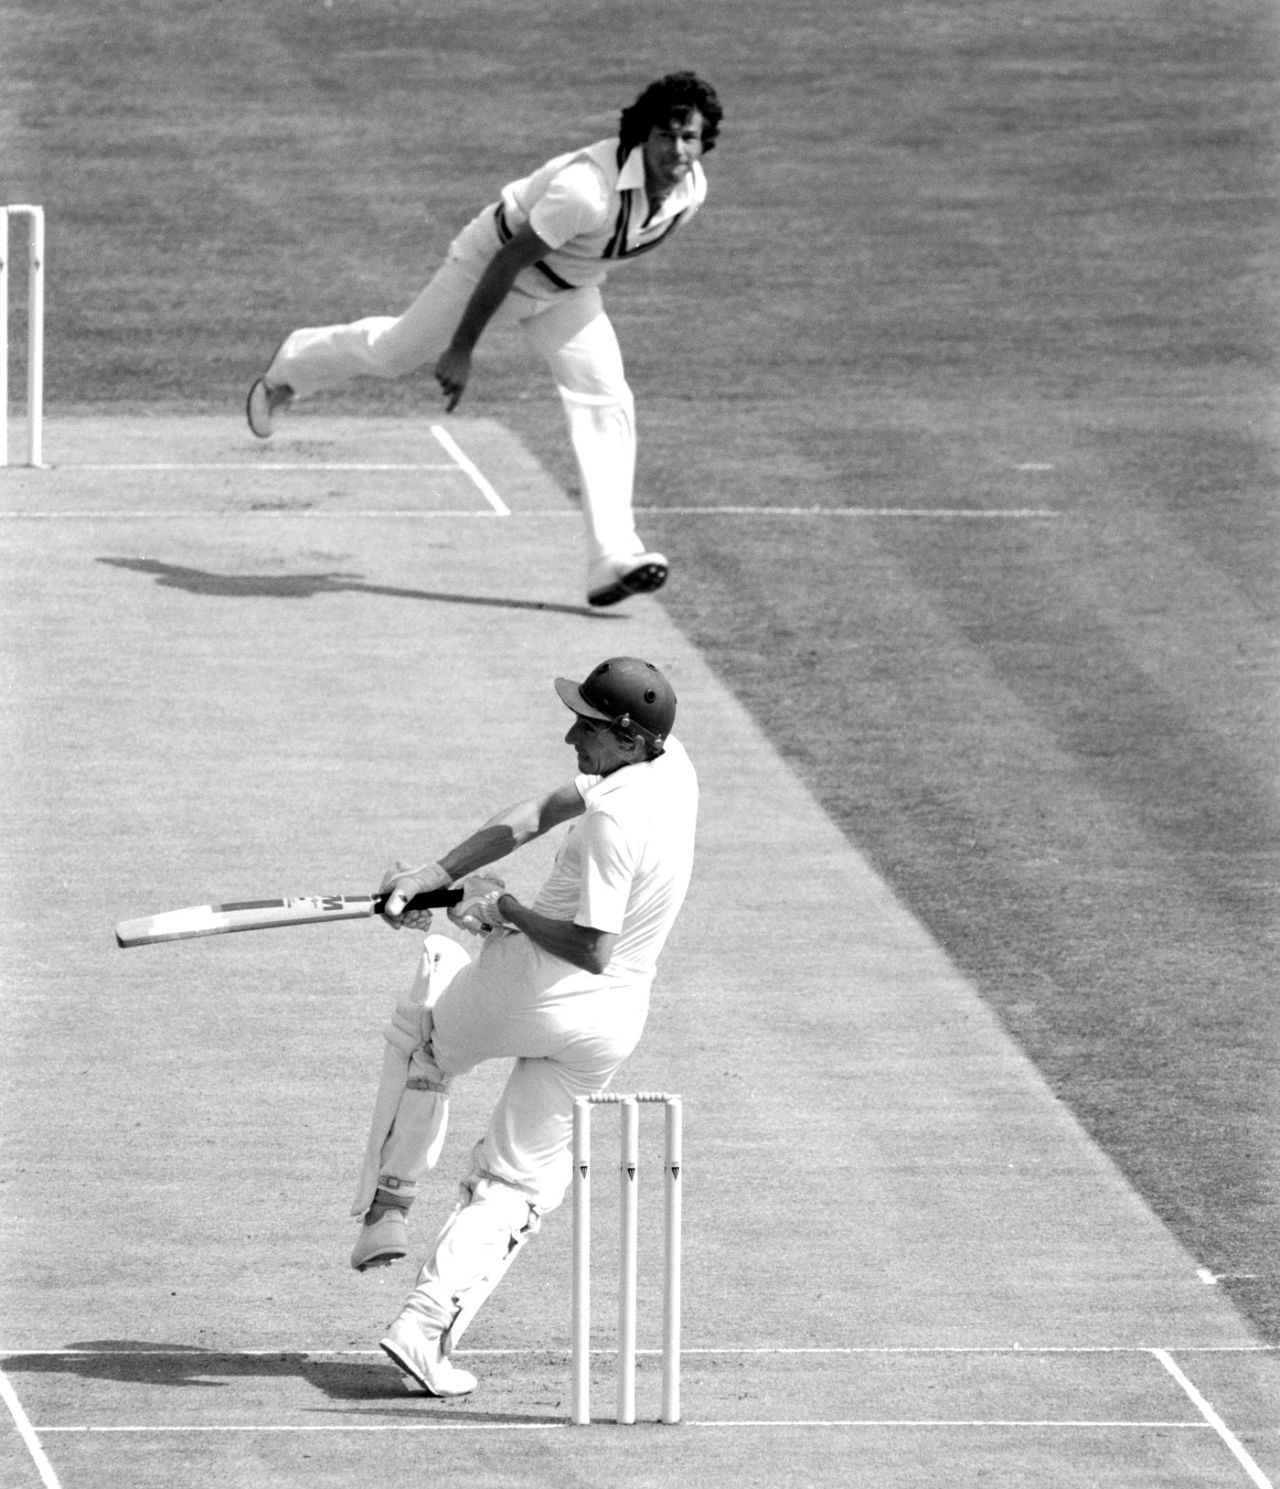 Derek Randall faces Imran Khan, England v Pakistan, 1st Test, Edgbaston, 1982